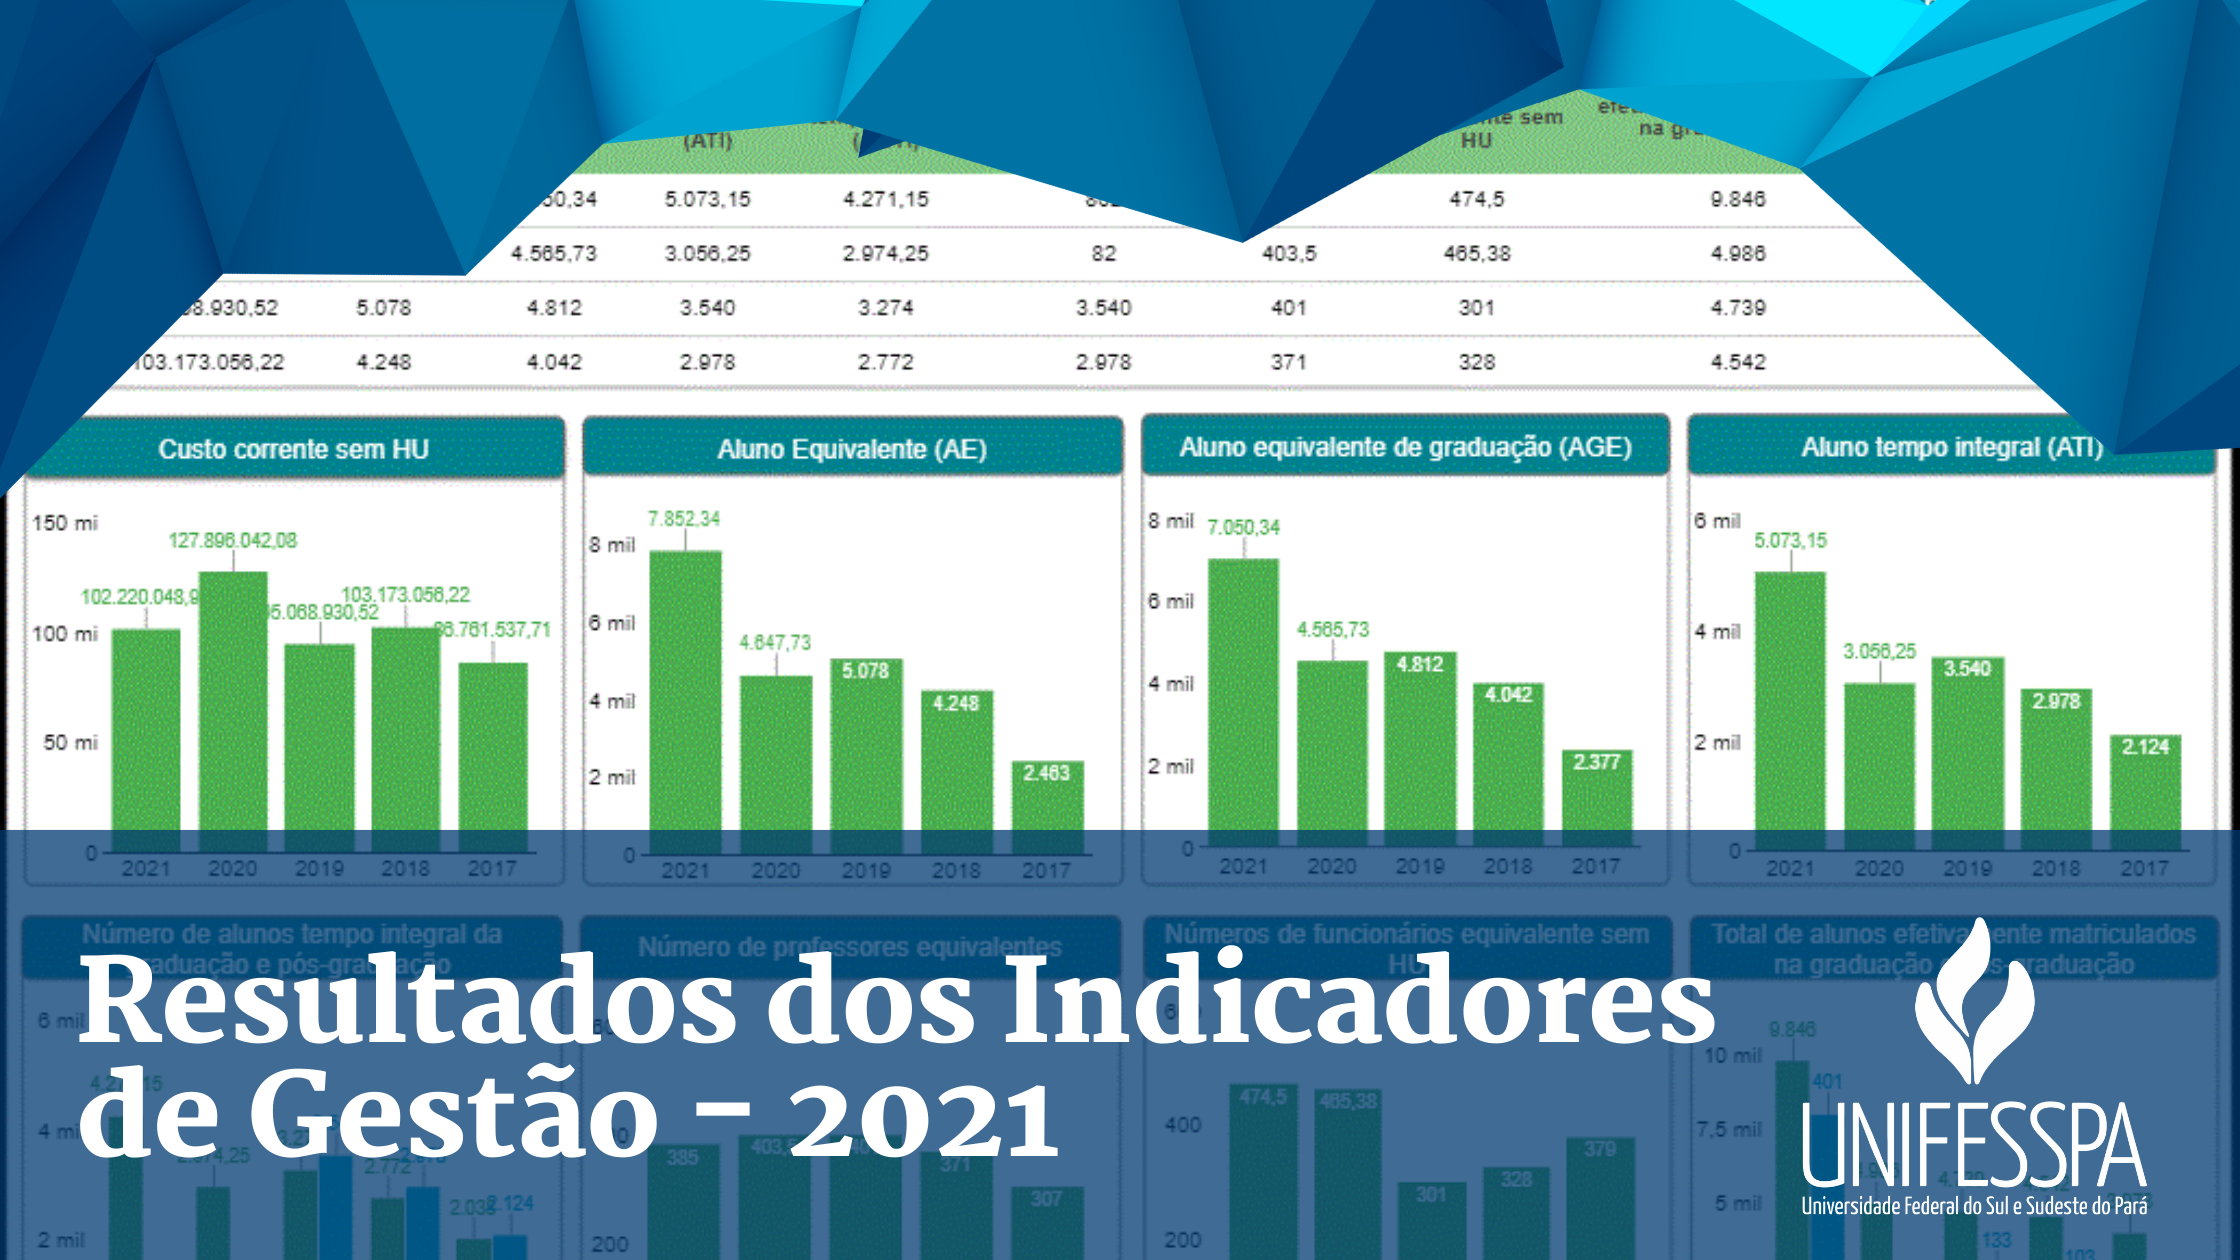 images/Resultados_dos_indicadores_de_gesto_-_2021.png